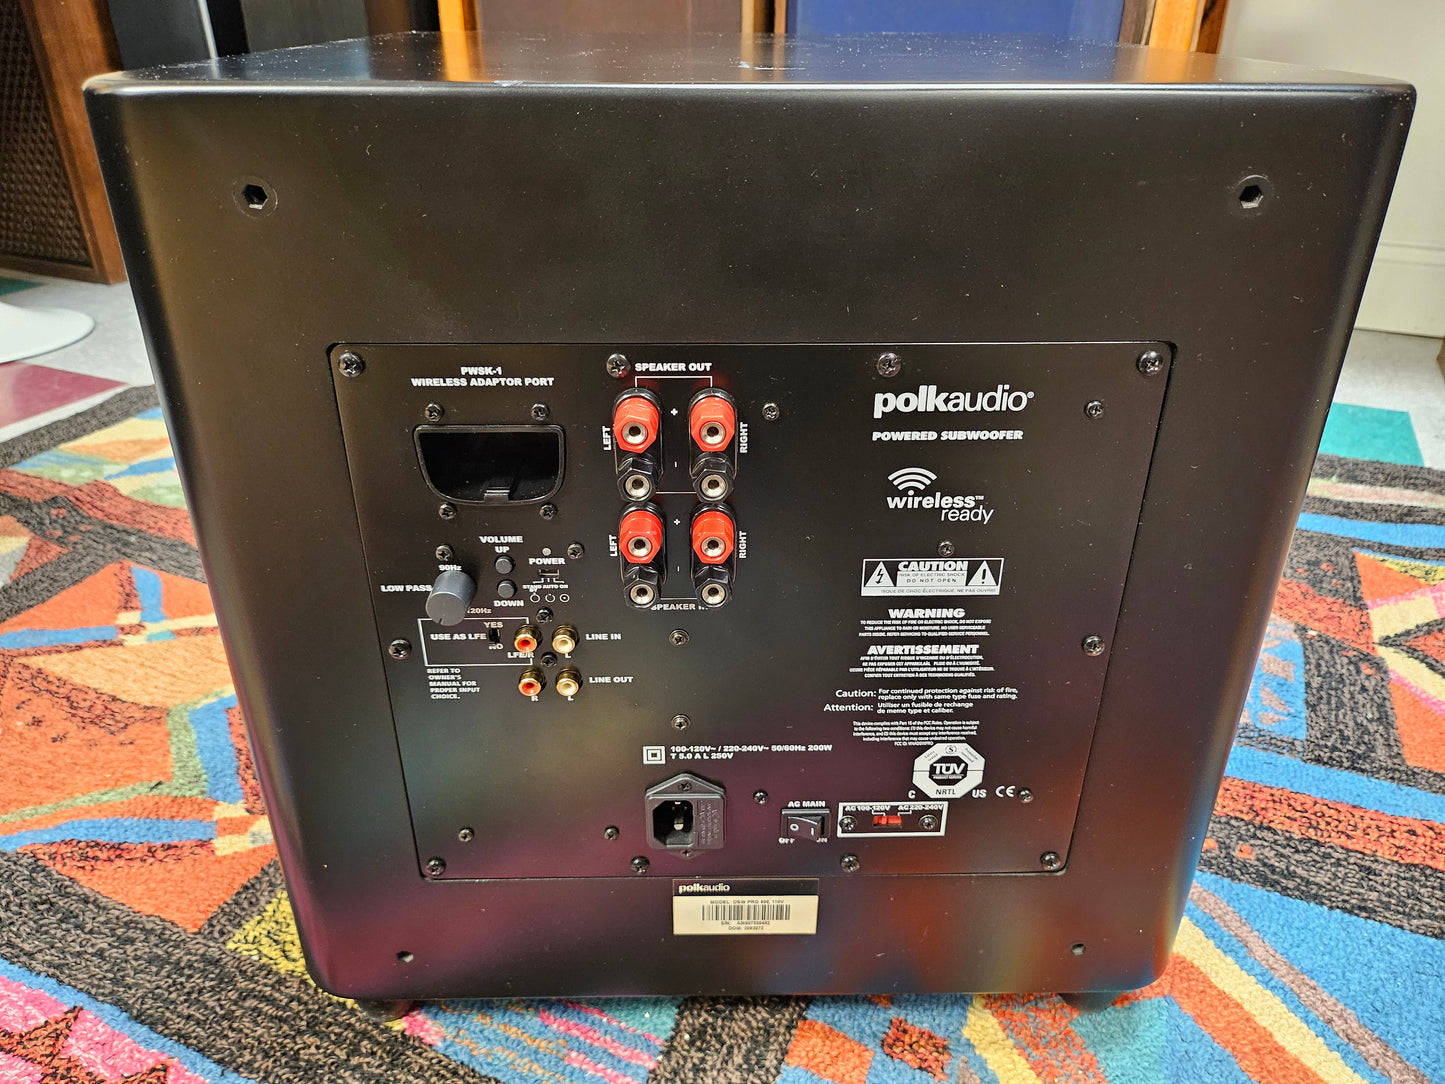 Polk Audio DSW-PRO600 Powered Subwoofer Wireless Ready